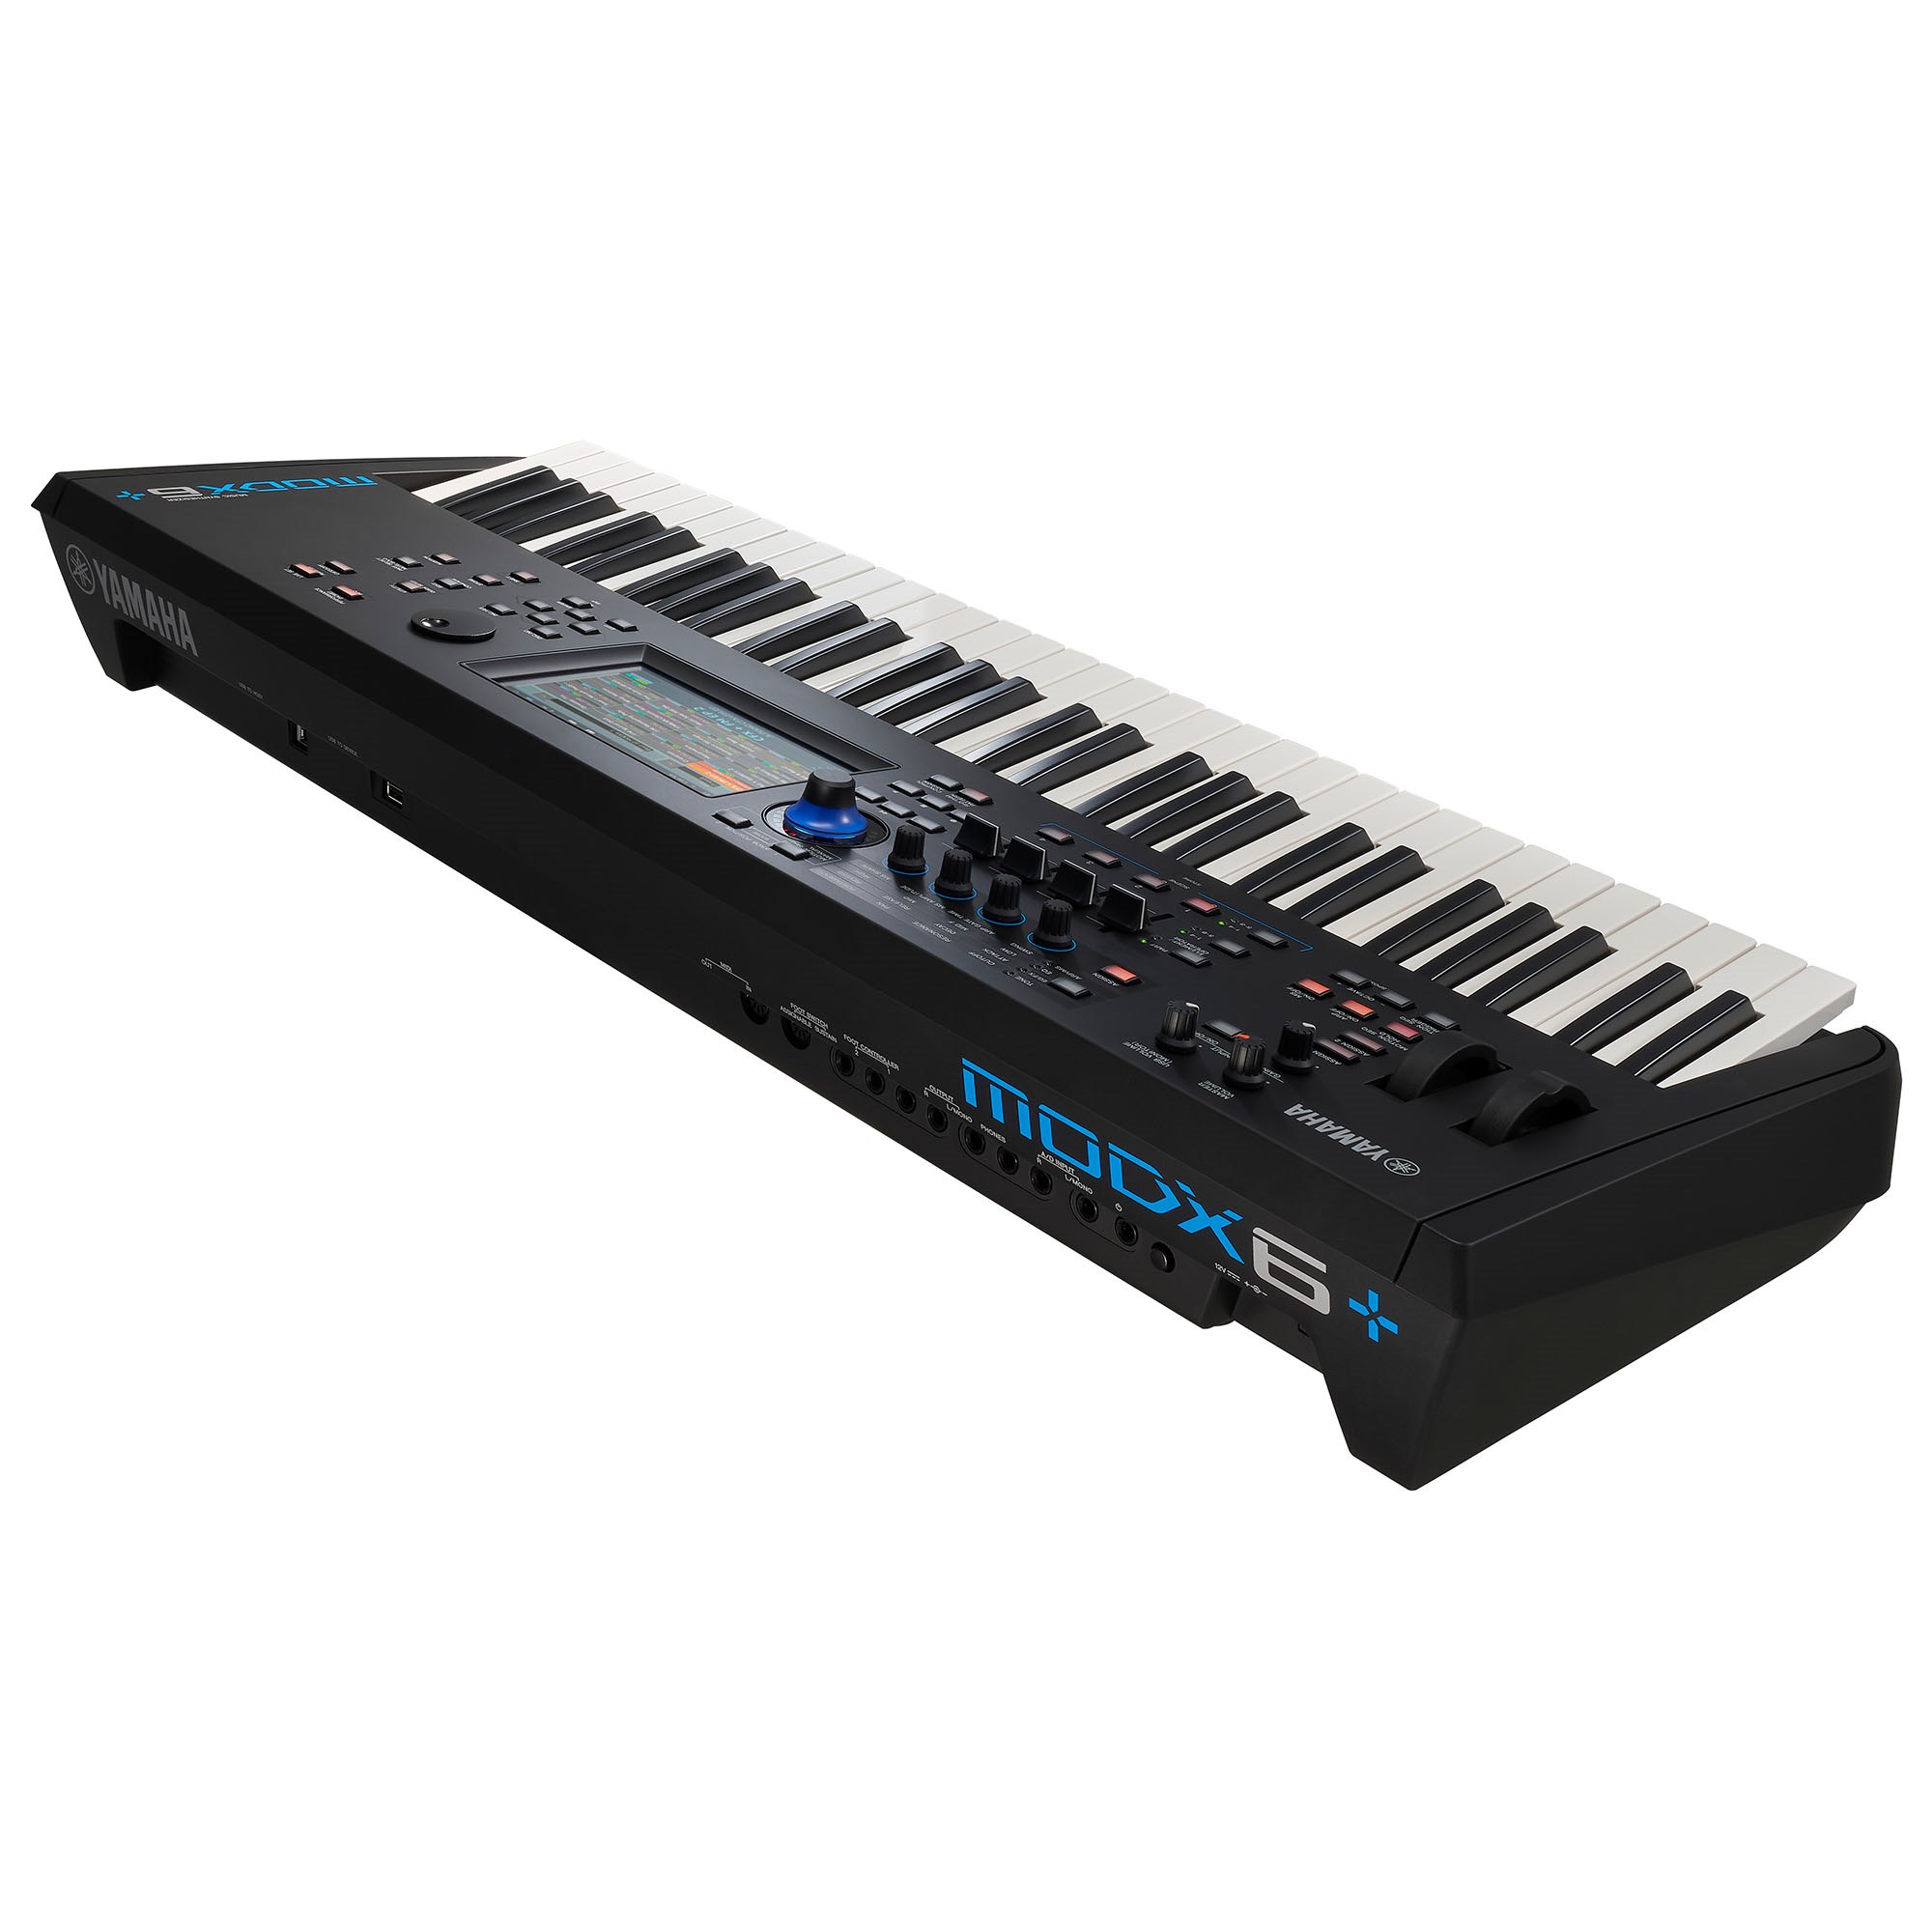 Đàn synthesizer YAMAHA MODX6+ với 61 phím gọn nhẹ - Bảo hành chính hãng 12 tháng